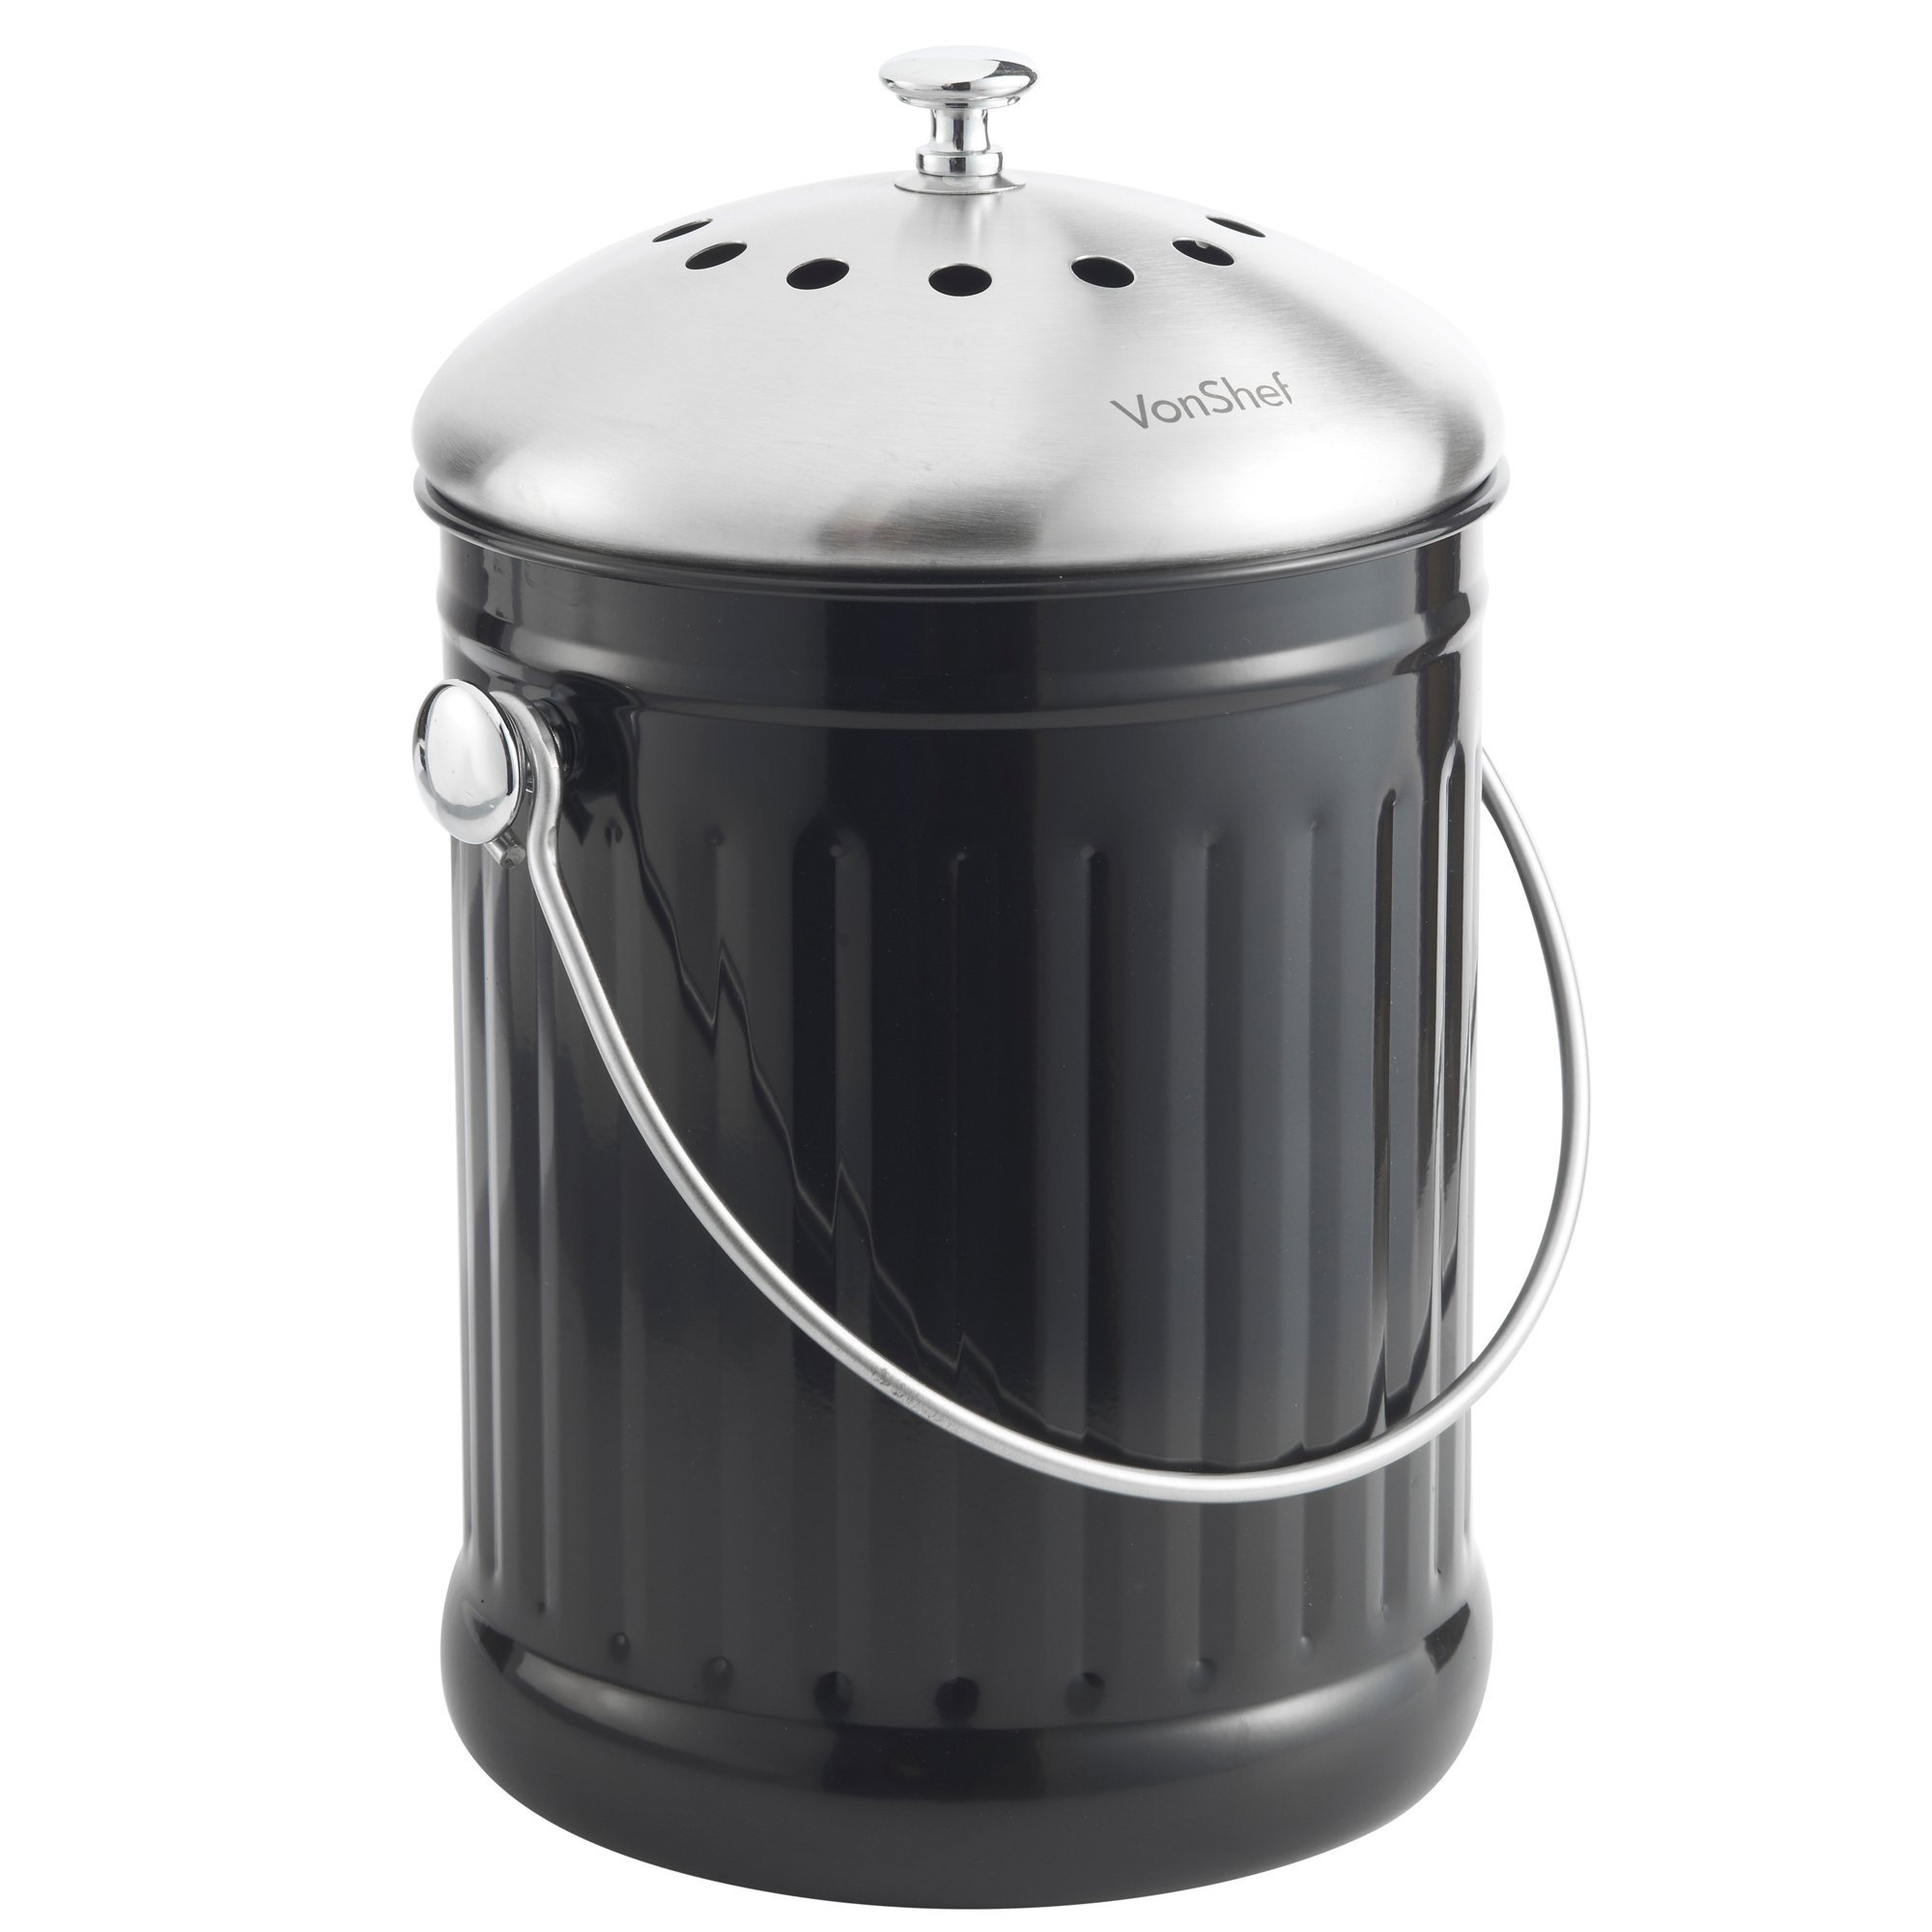 Compost Bucket For Kitchen Counter
 Vonshef 1 2 Gallon Countertop Kitchen post Bin